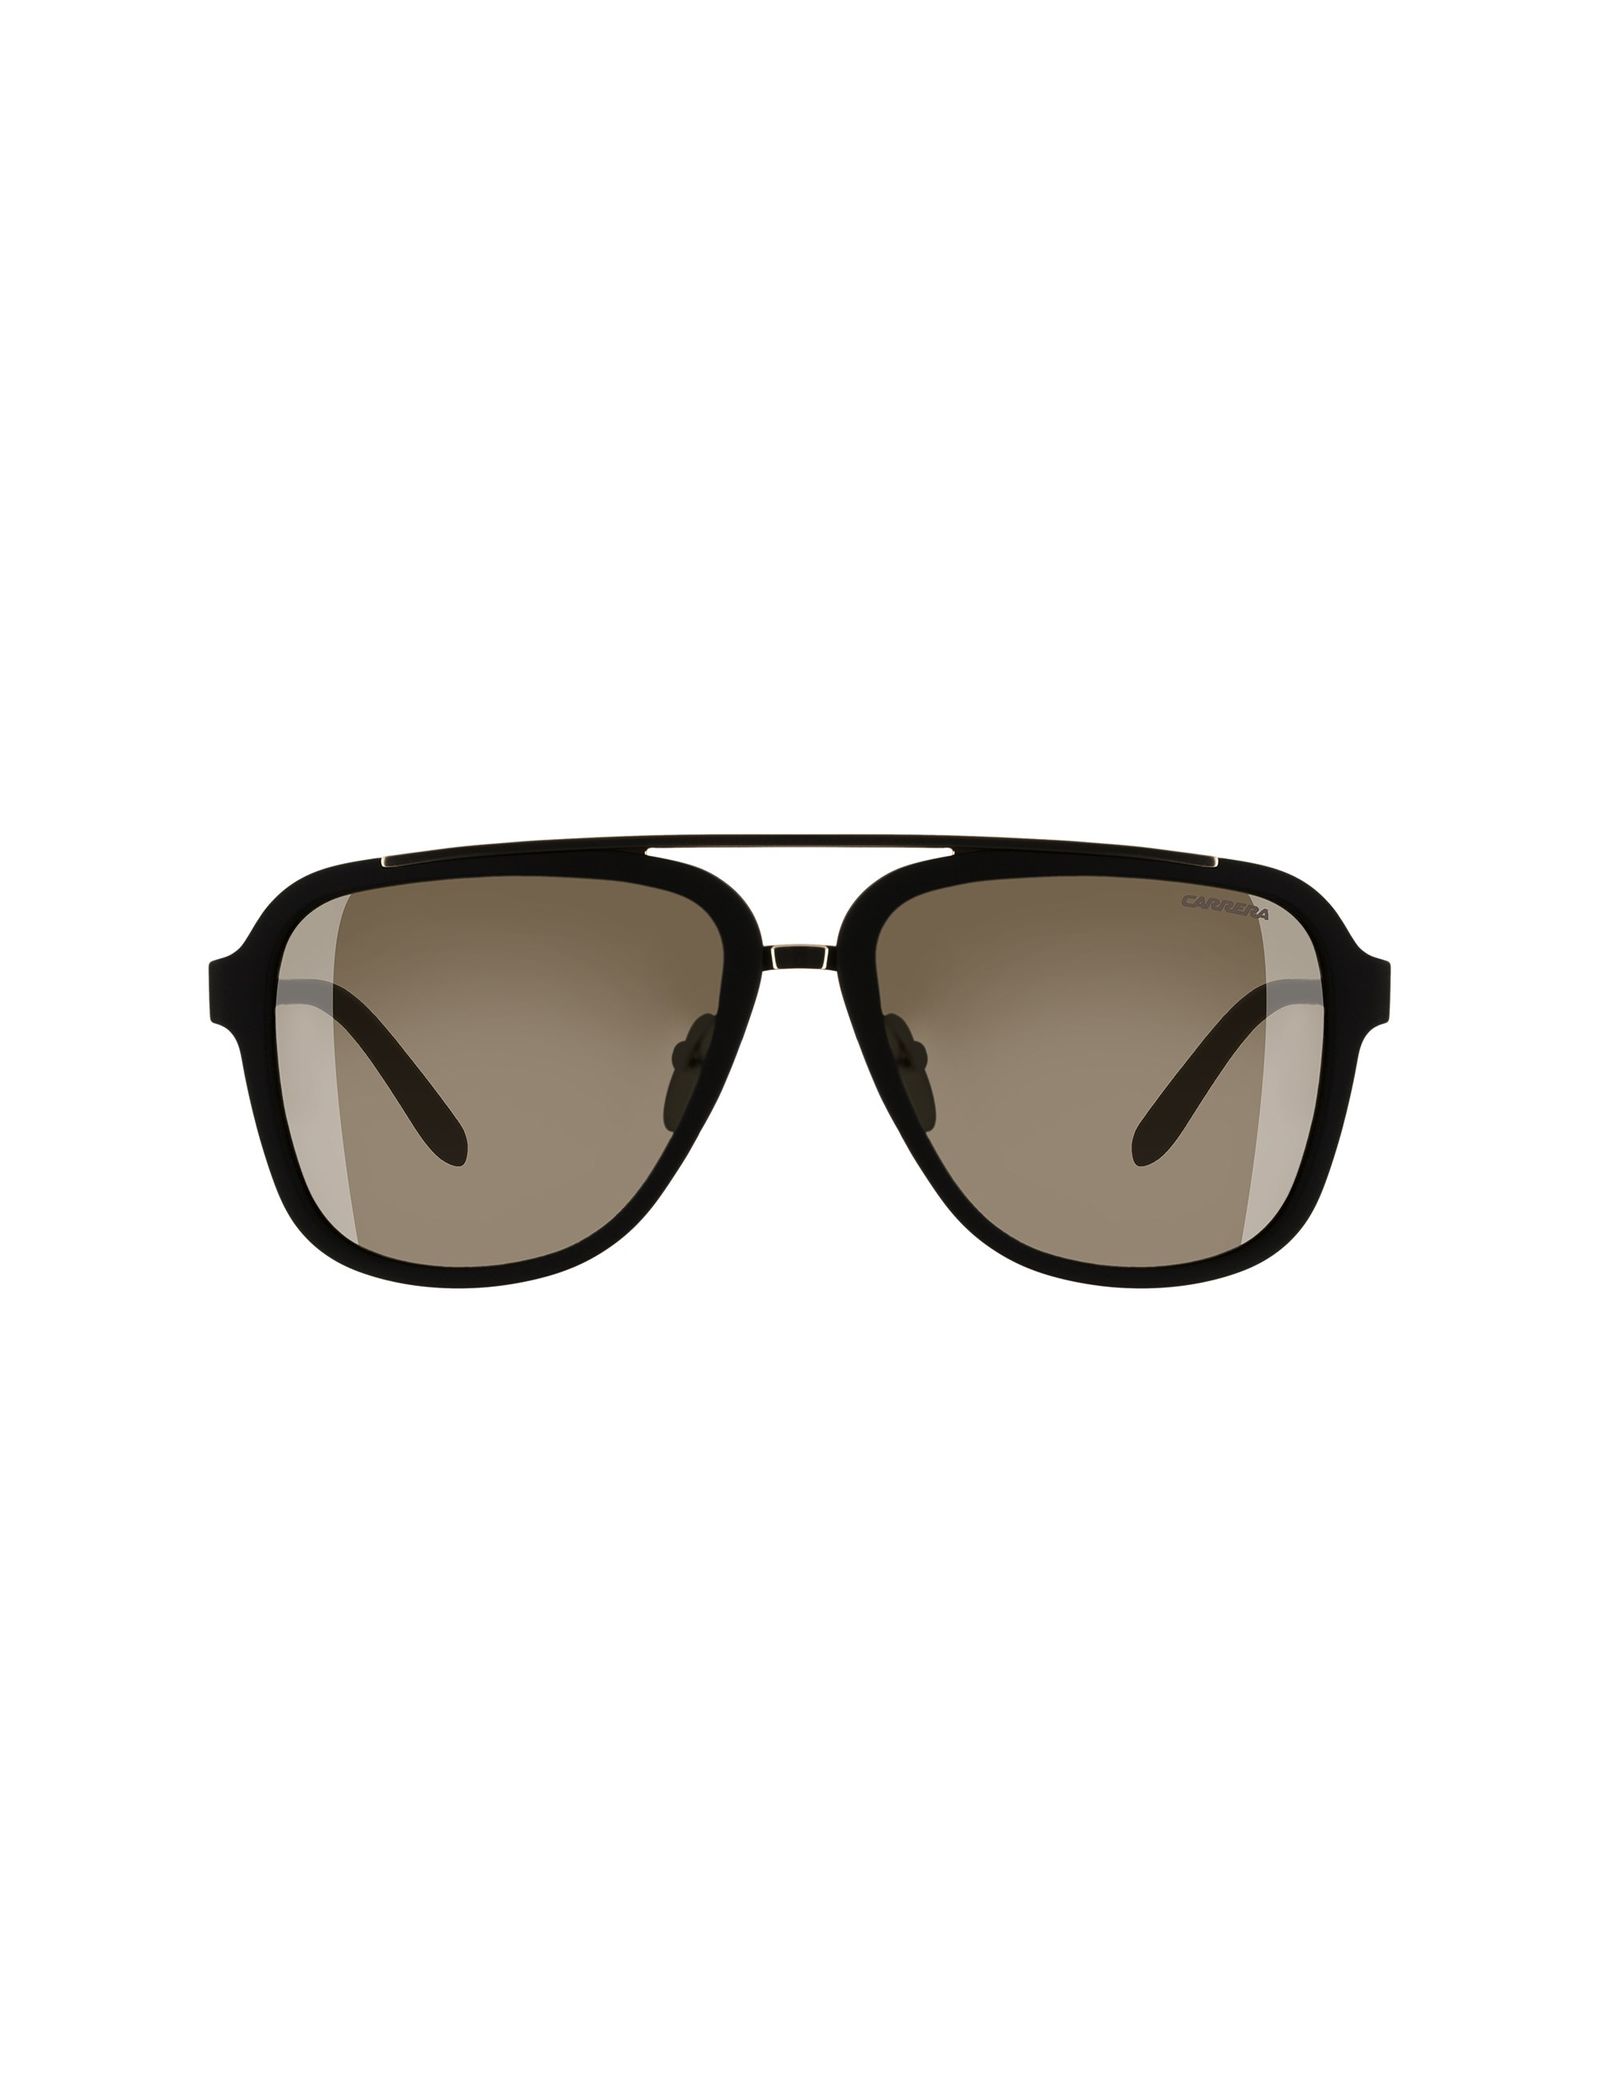 عینک آفتابی خلبانی مردانه - کاررا - مشکي مات - 1